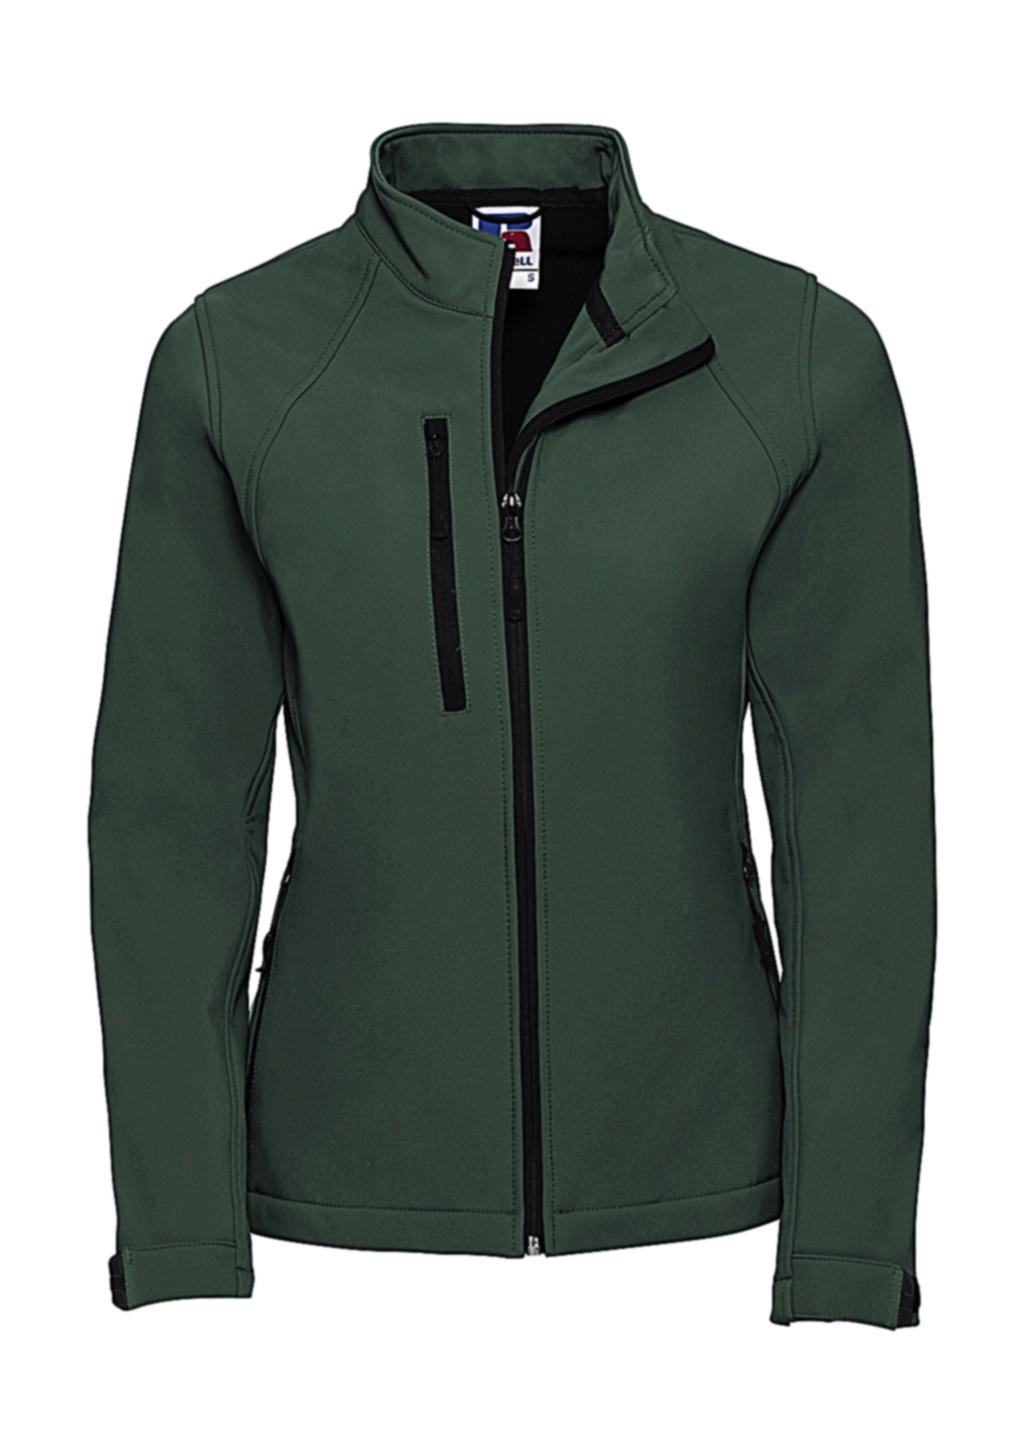 Softshell Jacket zum Besticken und Bedrucken in der Farbe Bottle Green mit Ihren Logo, Schriftzug oder Motiv.